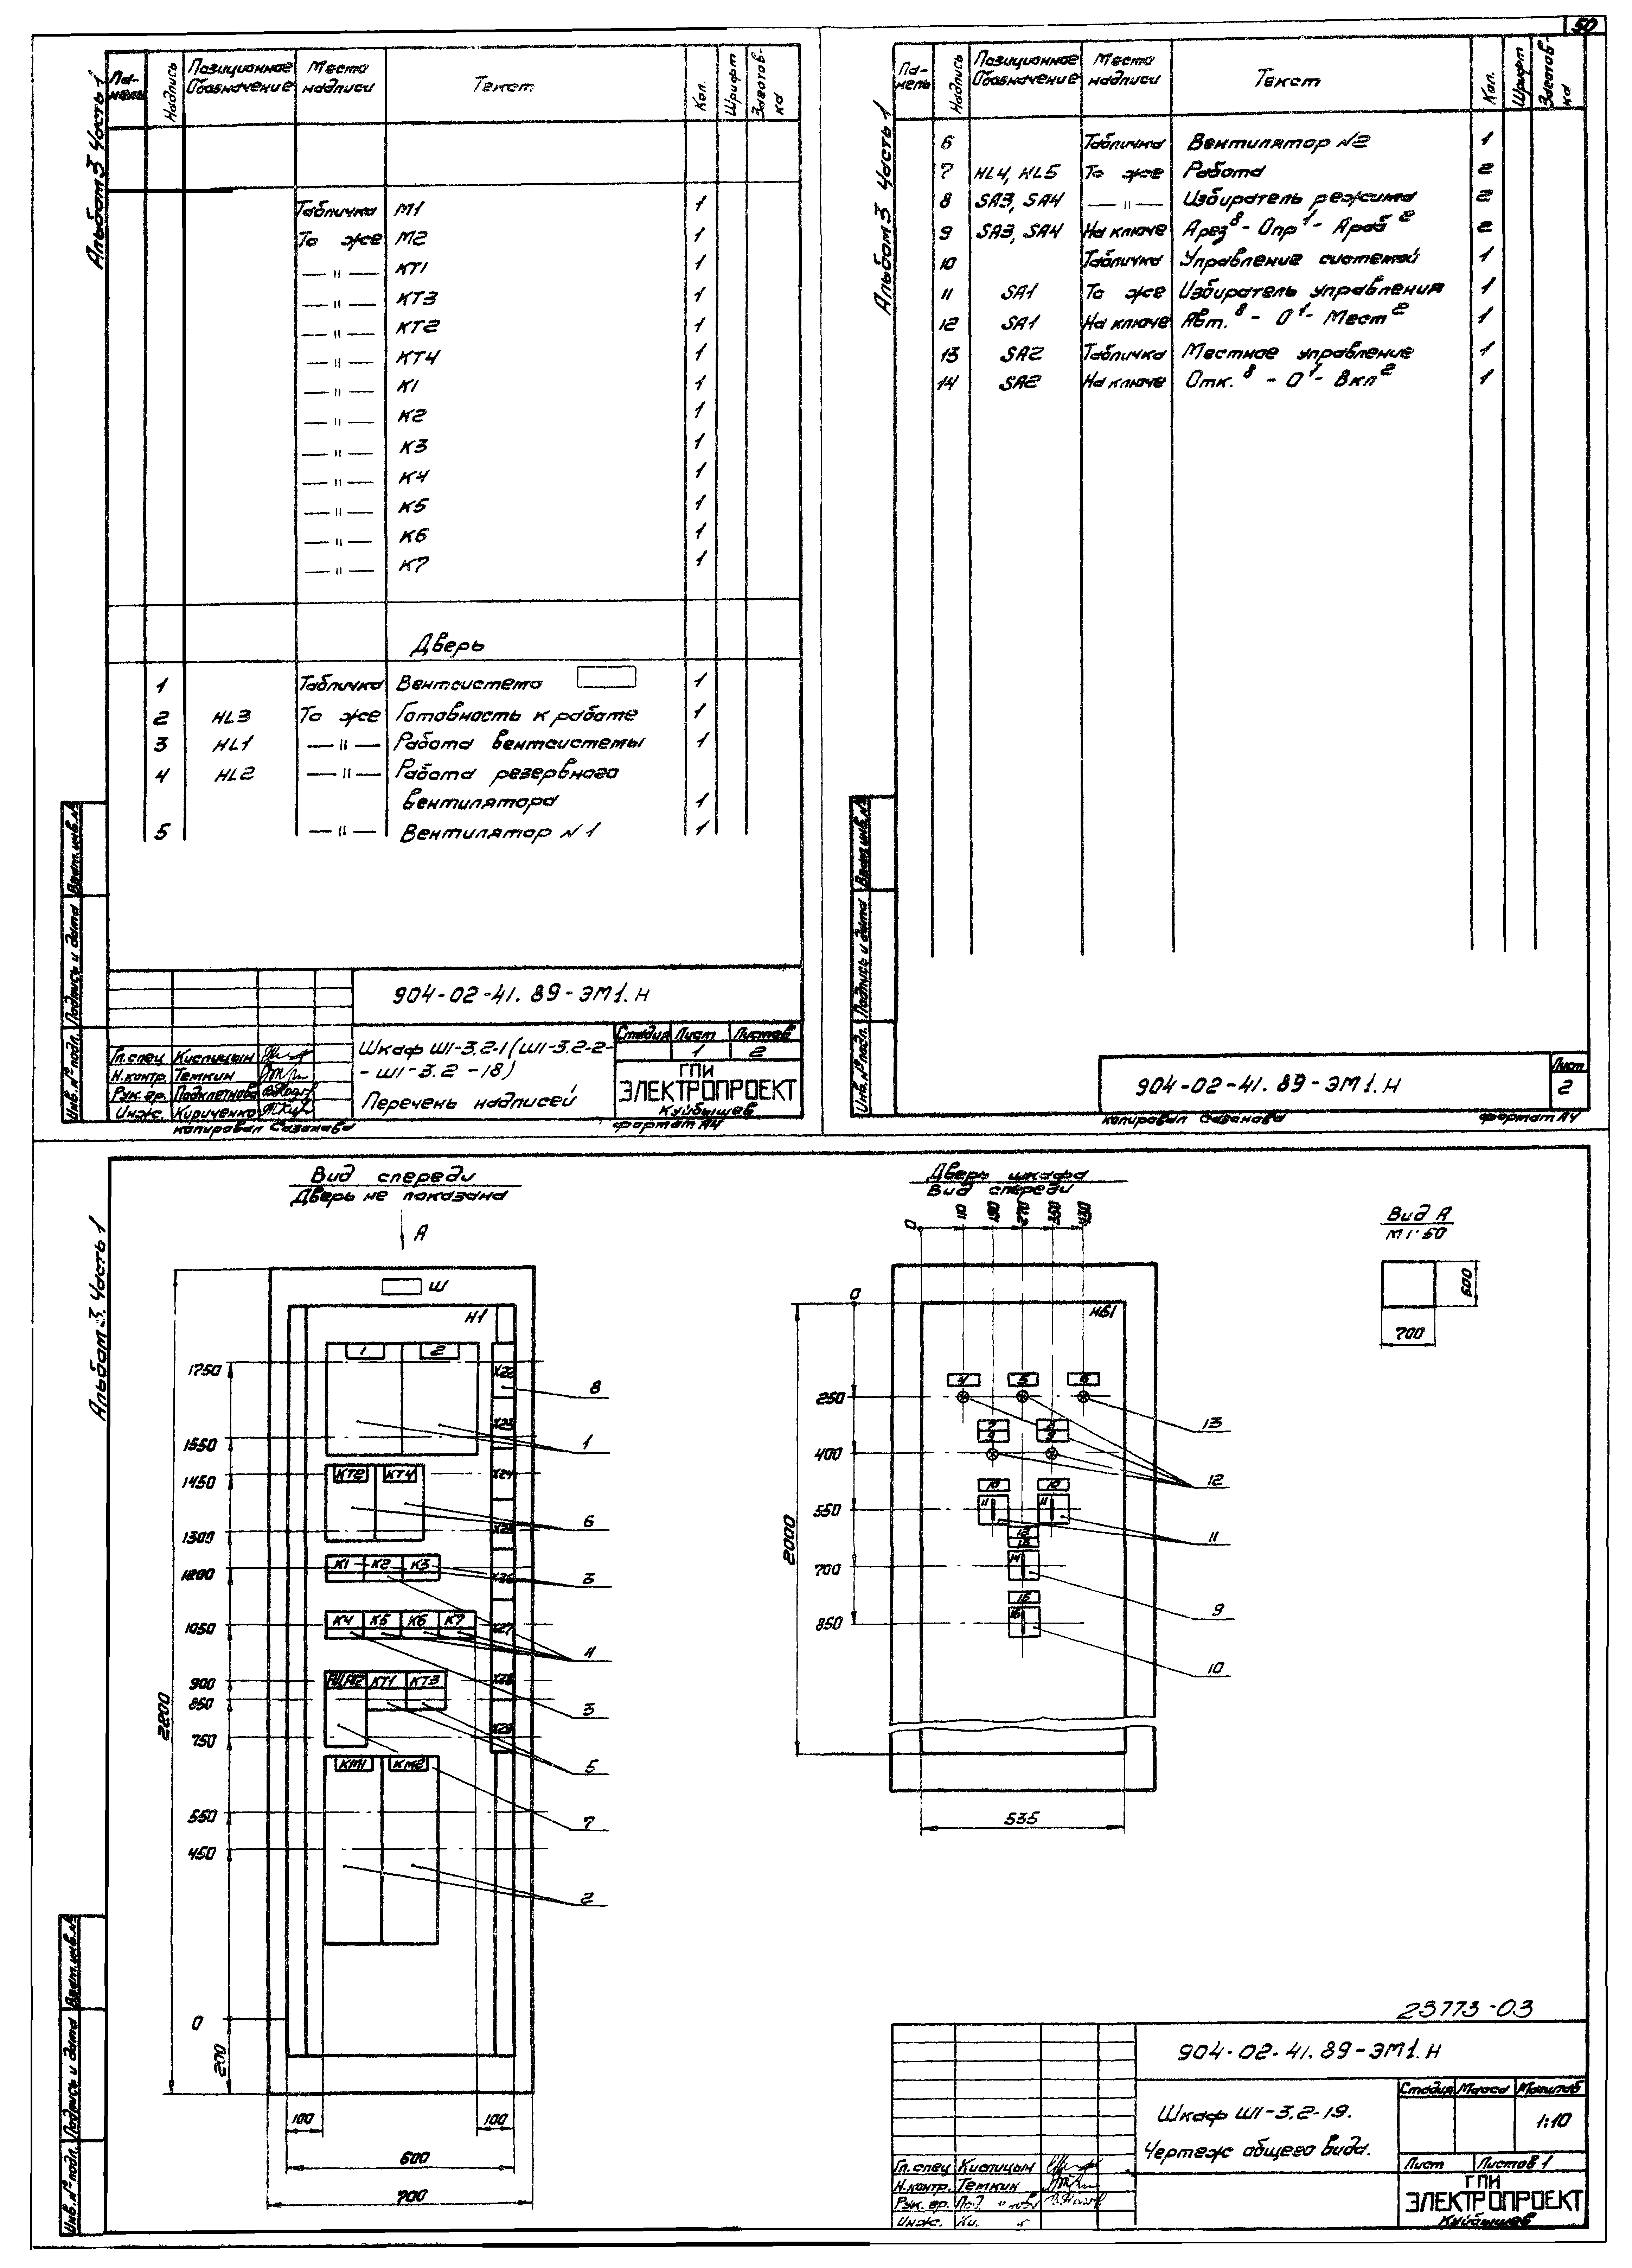 Типовые материалы для проектирования 904-02-41.89